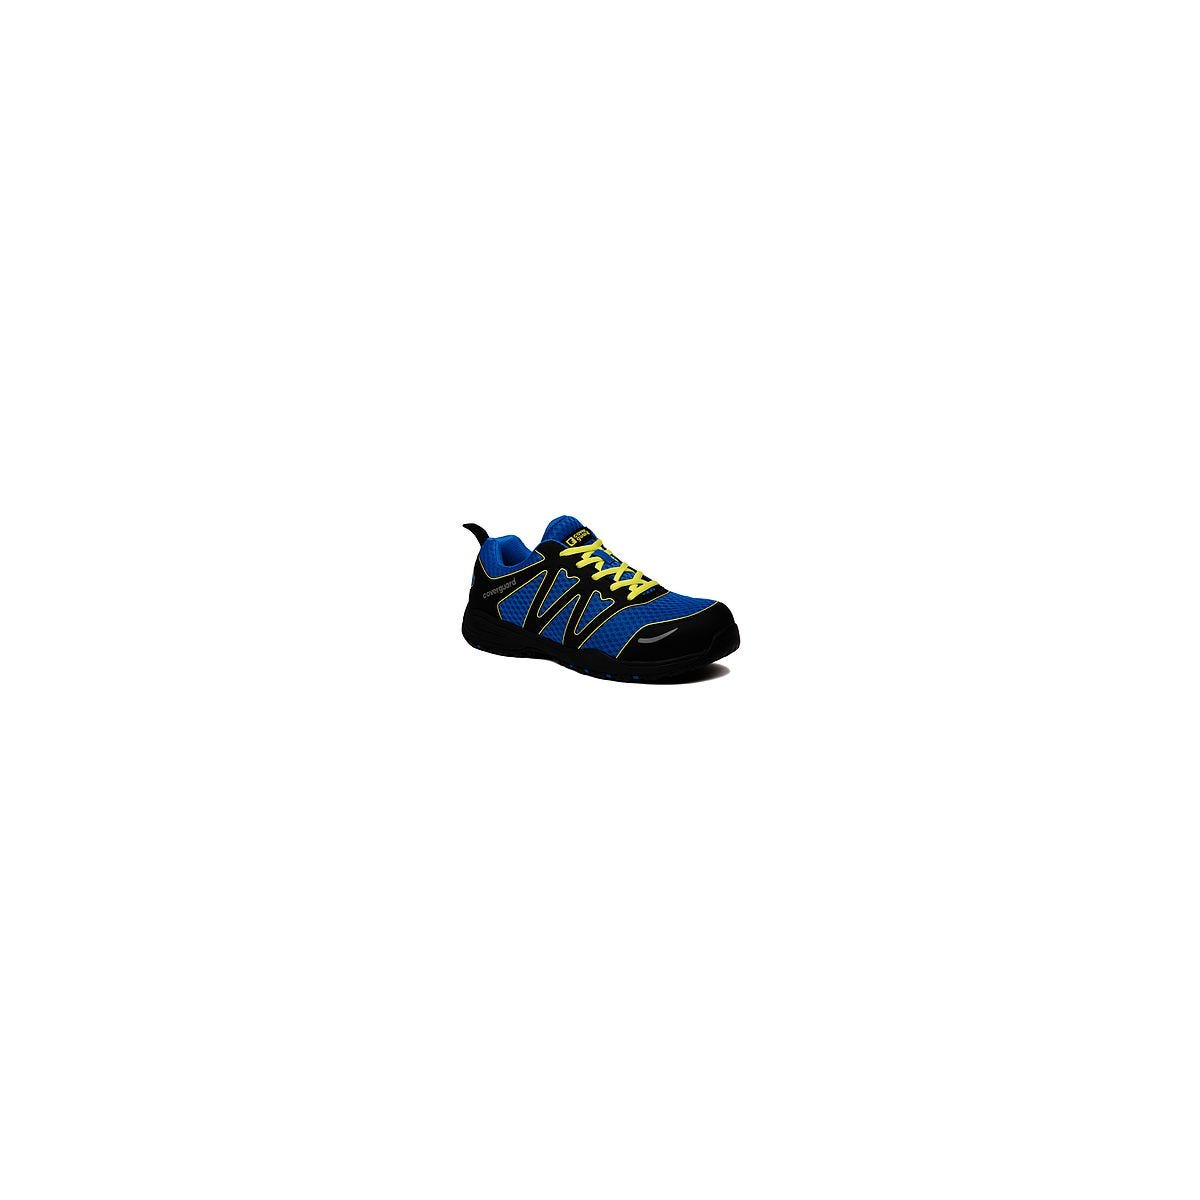 Chaussures de sécurité GYPSE S1P Basse Bleu/Noir - Coverguard - Taille 46 0